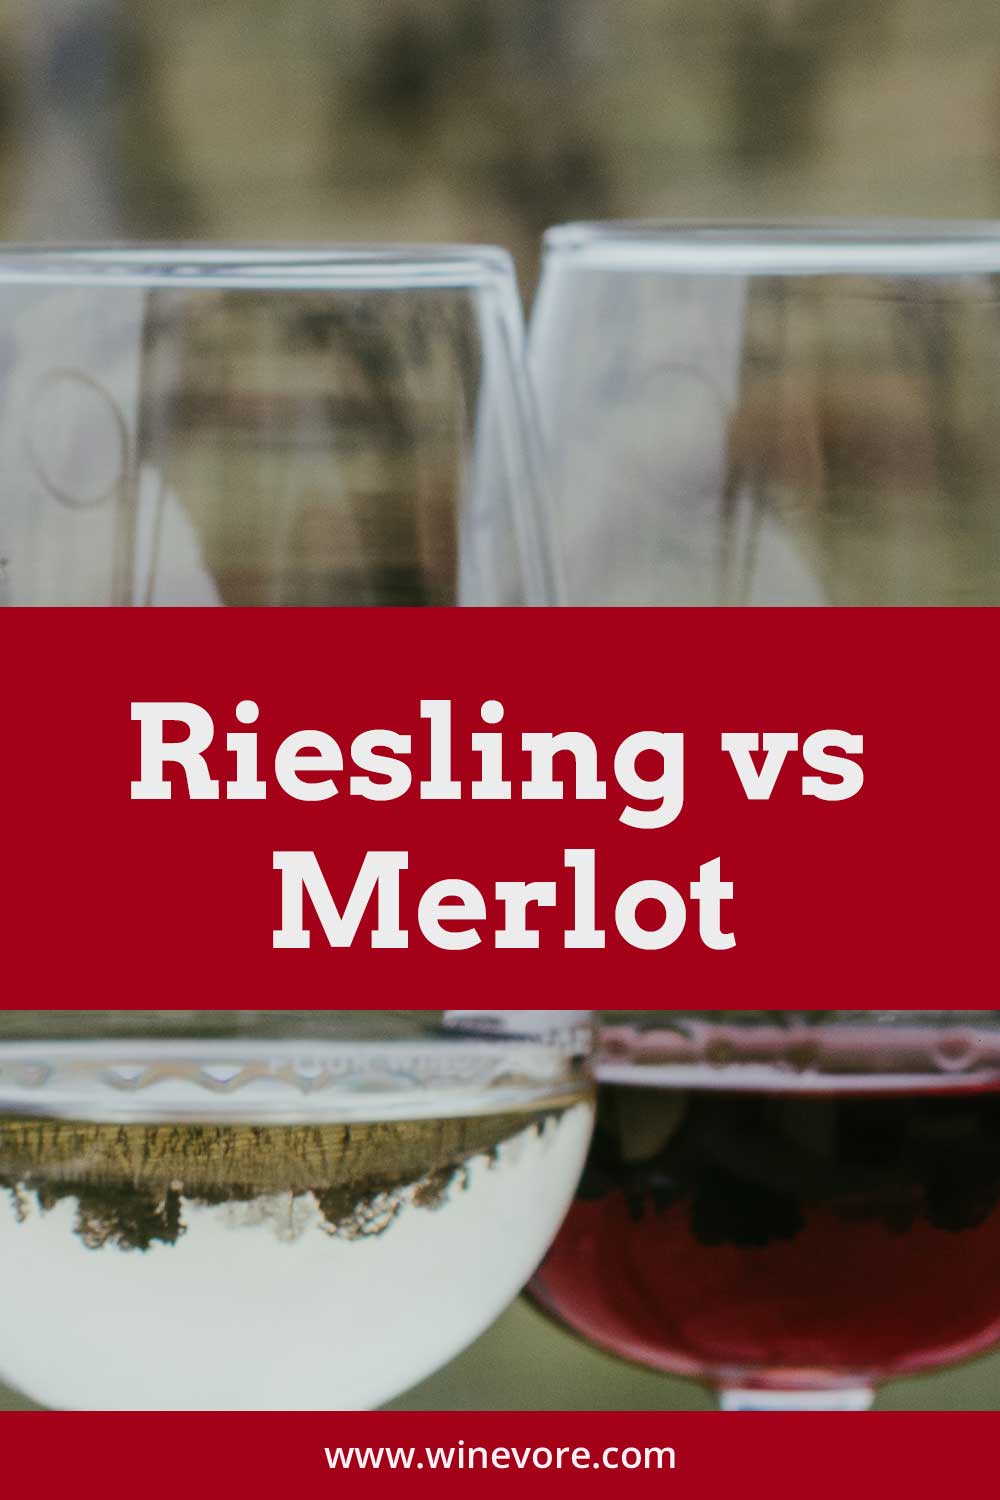 2 glasses of wine - Riesling vs Merlot.